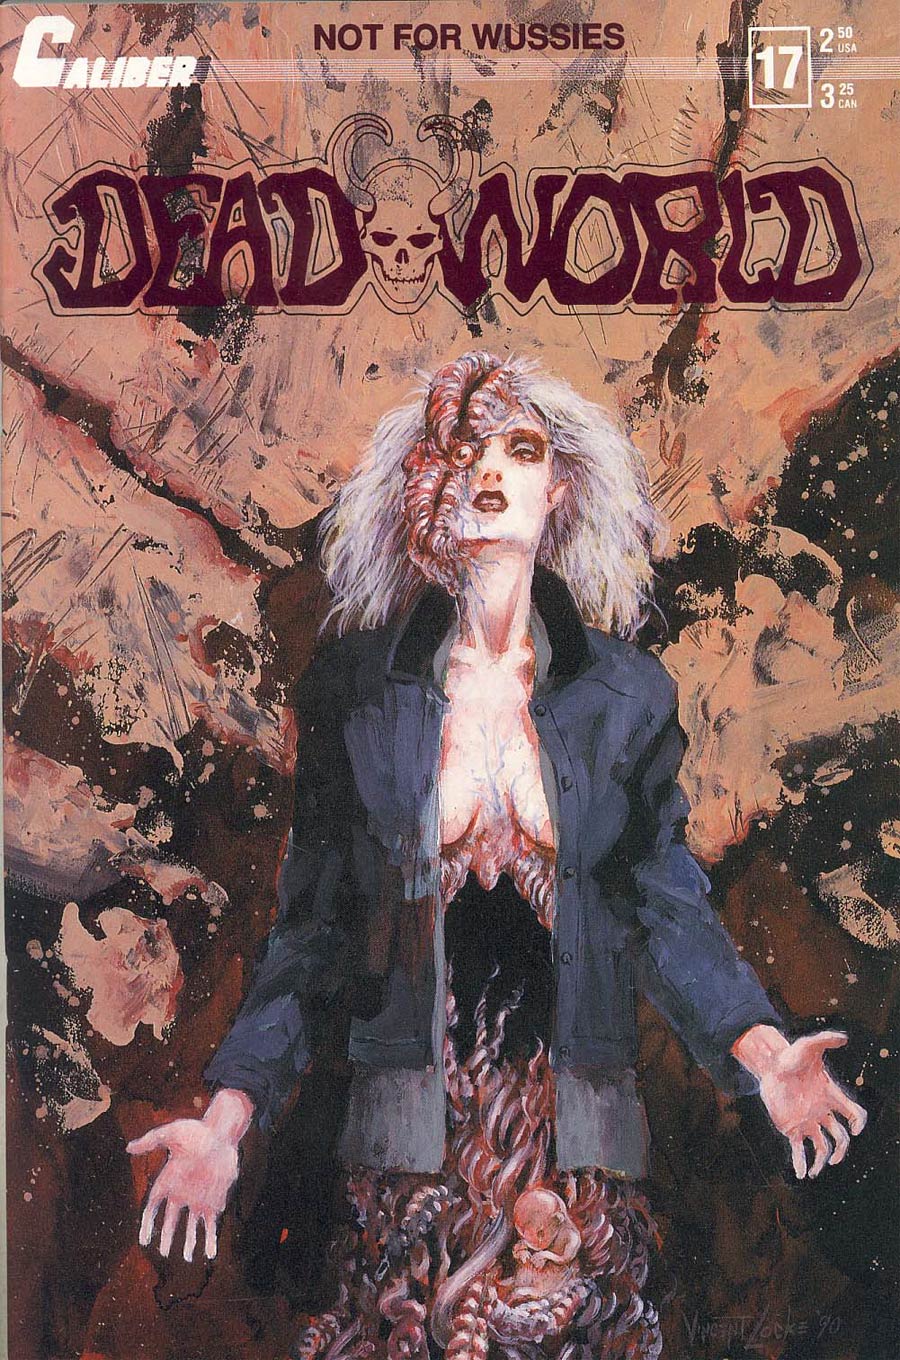 Deadworld #17 Graphic Cover